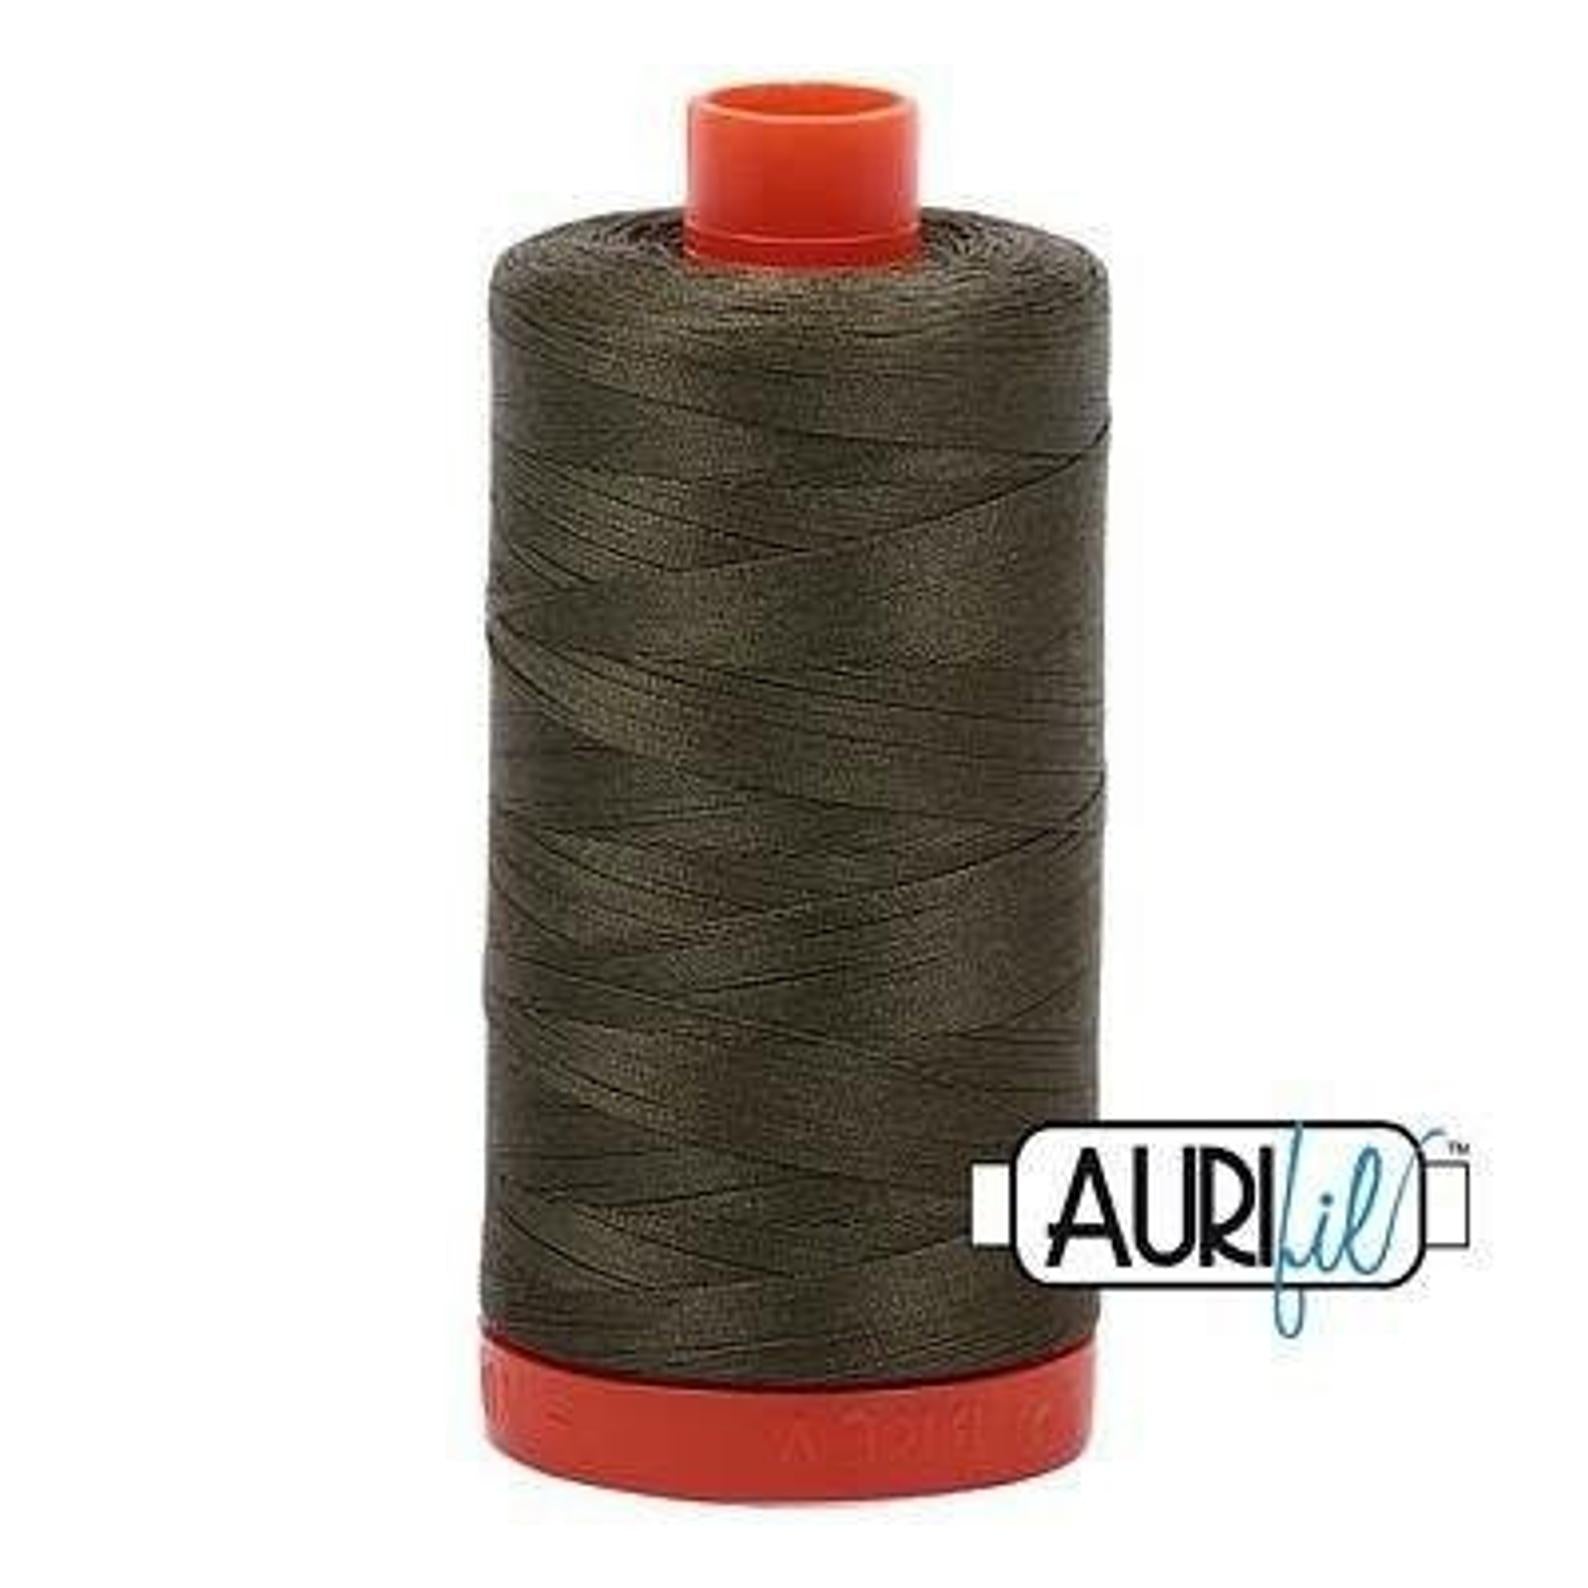 Aurifil 50 wt cotton thread, 1300m, Army Green (2905)